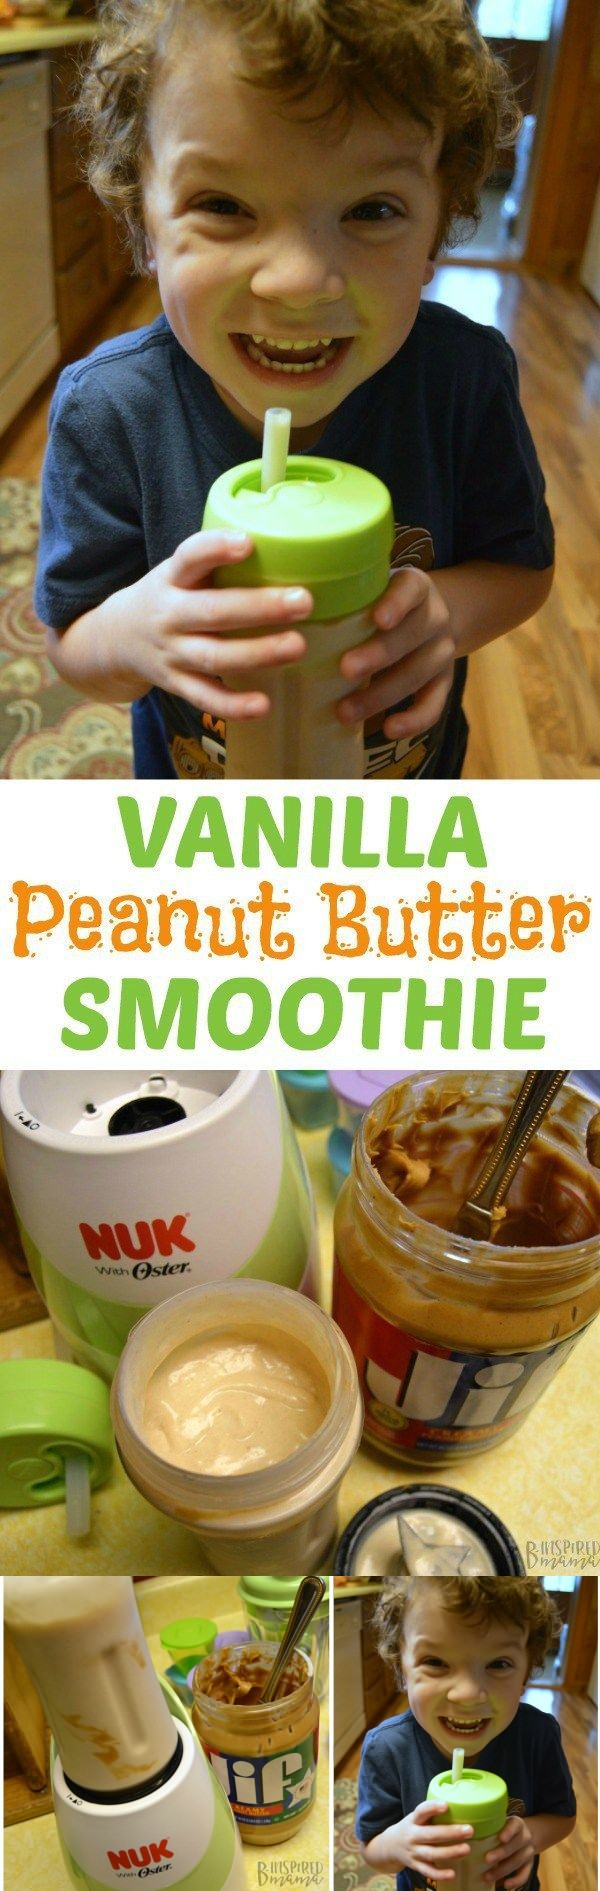 Vanilla Peanut Butter Smoothie